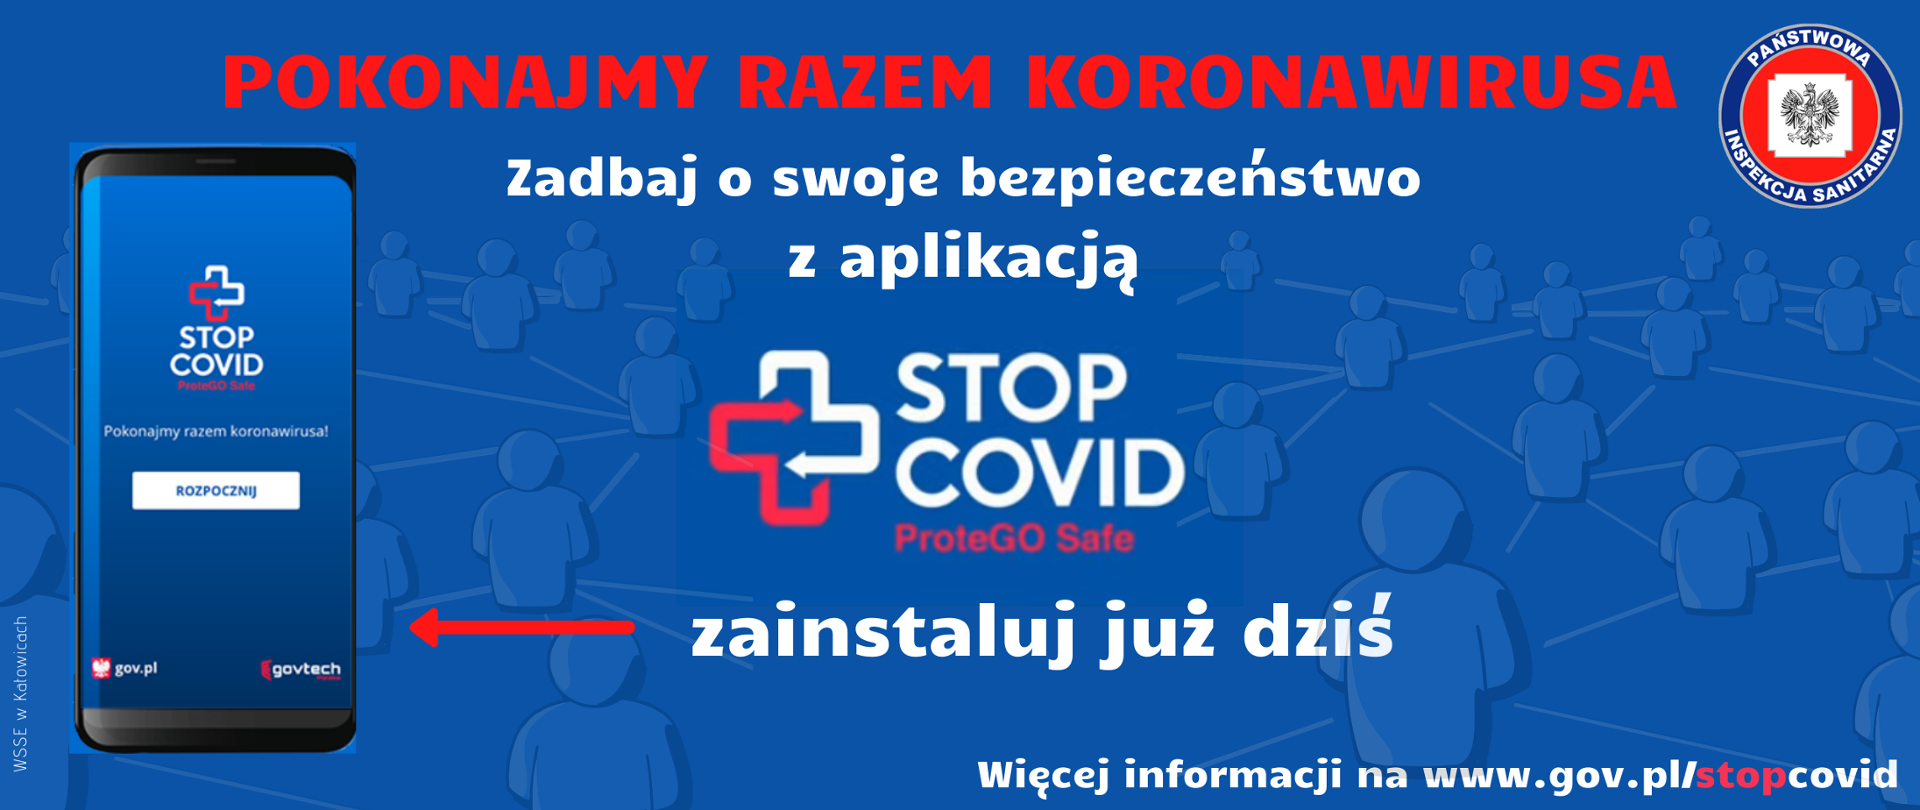 Pokonajmy Razem Koronawirusa
Aplikacja STOP COVID ProteGO Safe